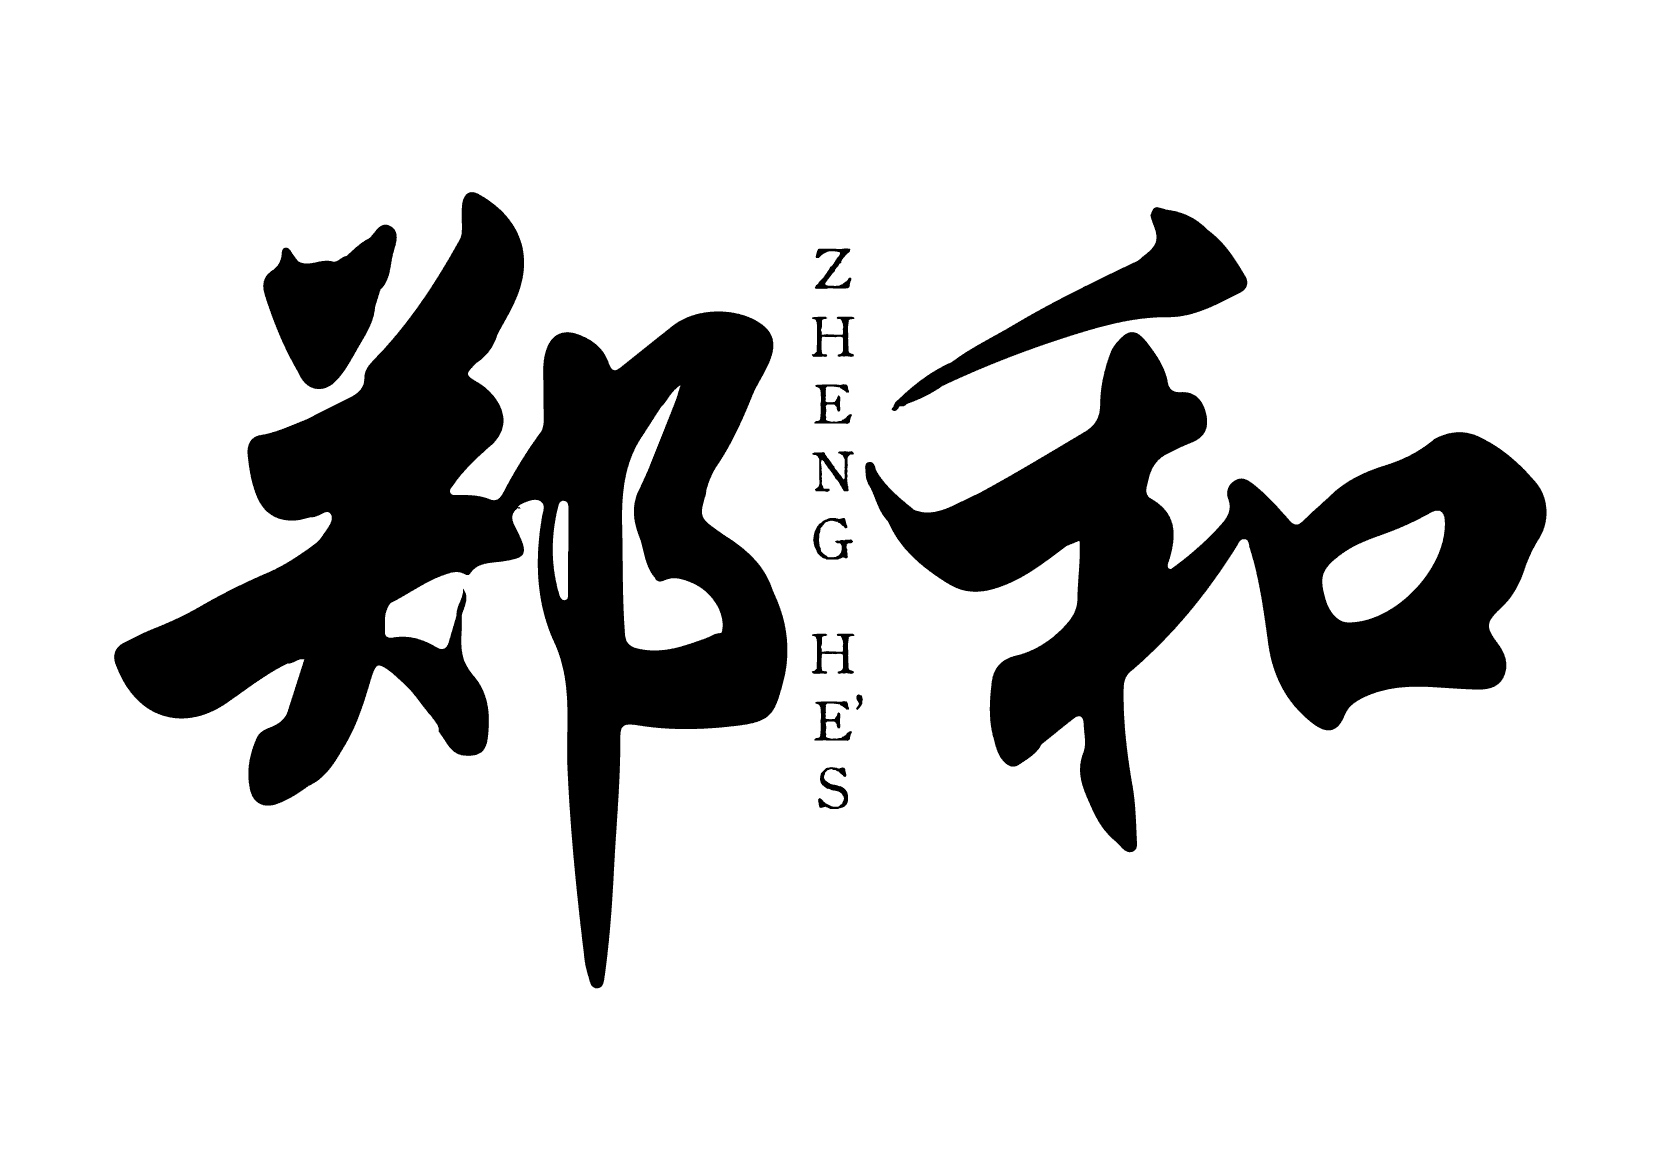 Zheng He’s